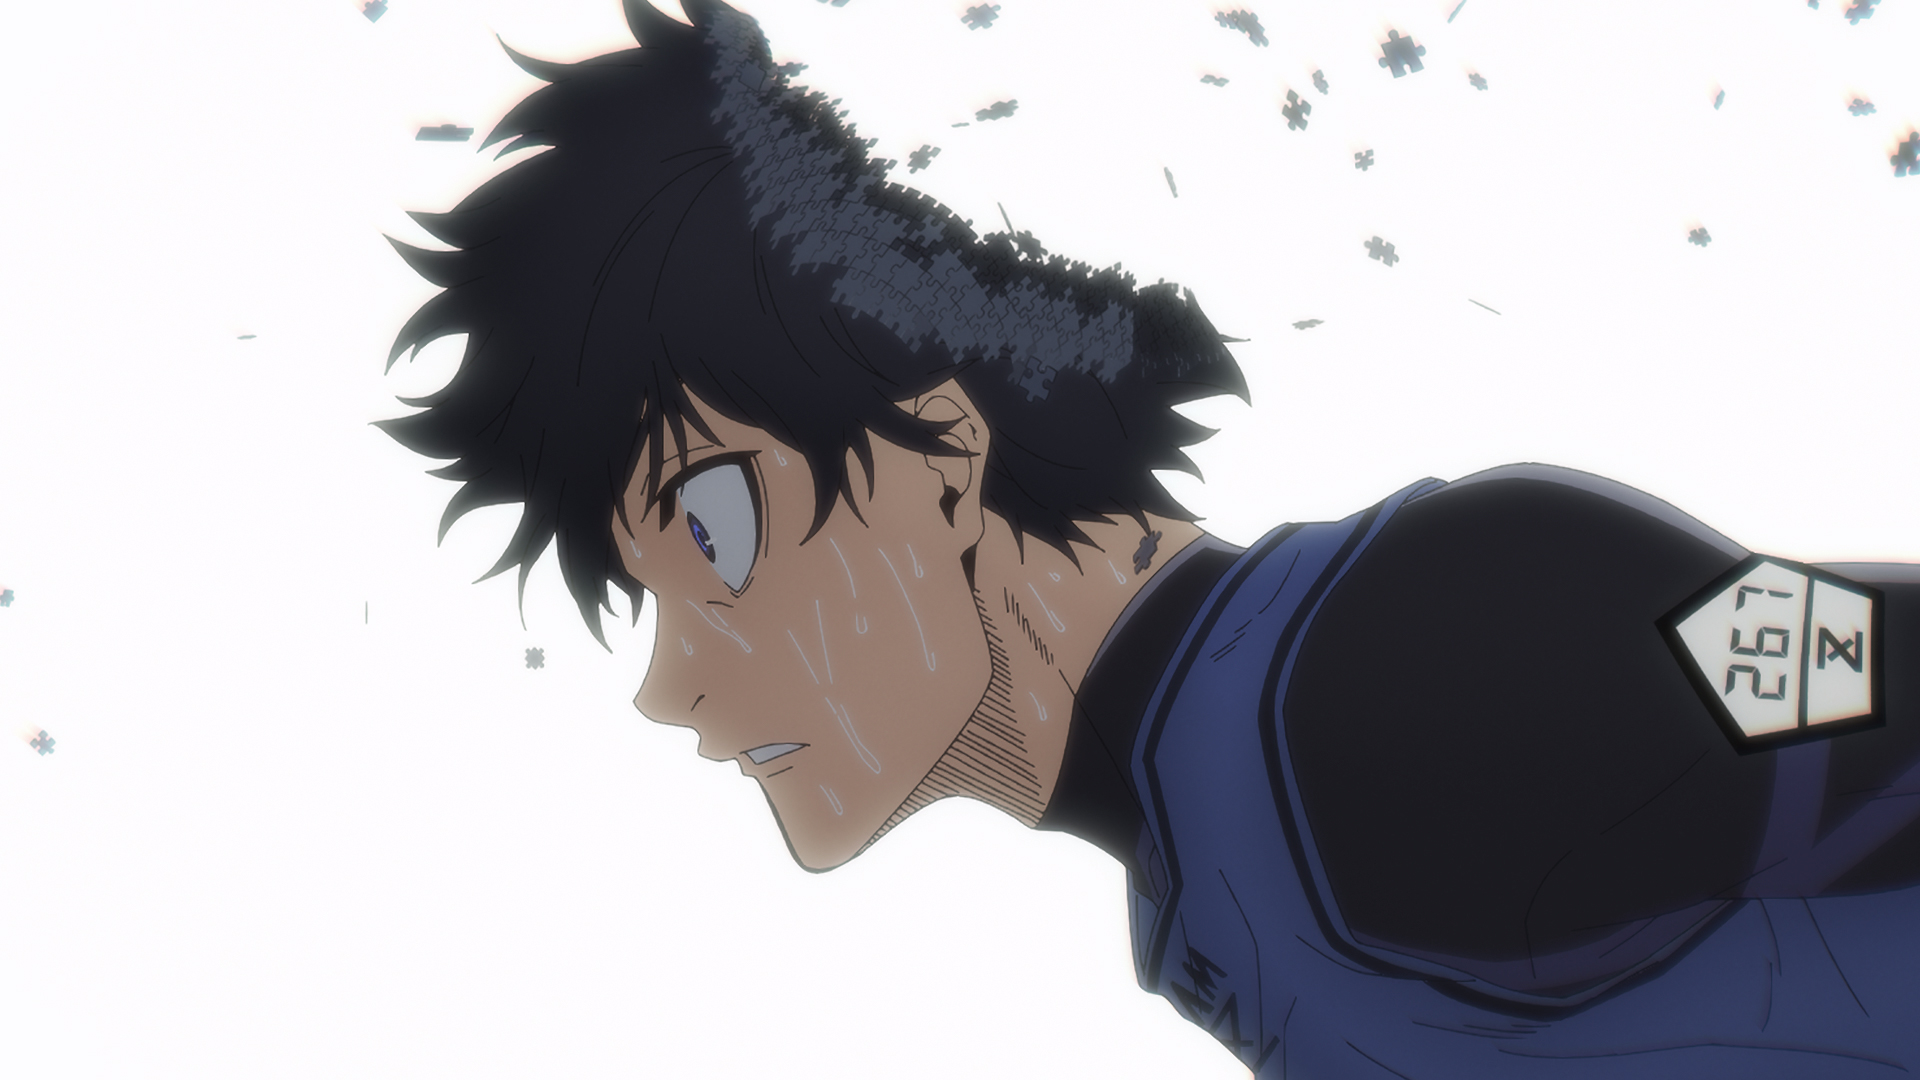 BLUELOCK: Episode Nagi Anime Film Scores Teaser Visual, Trailer -  Crunchyroll News